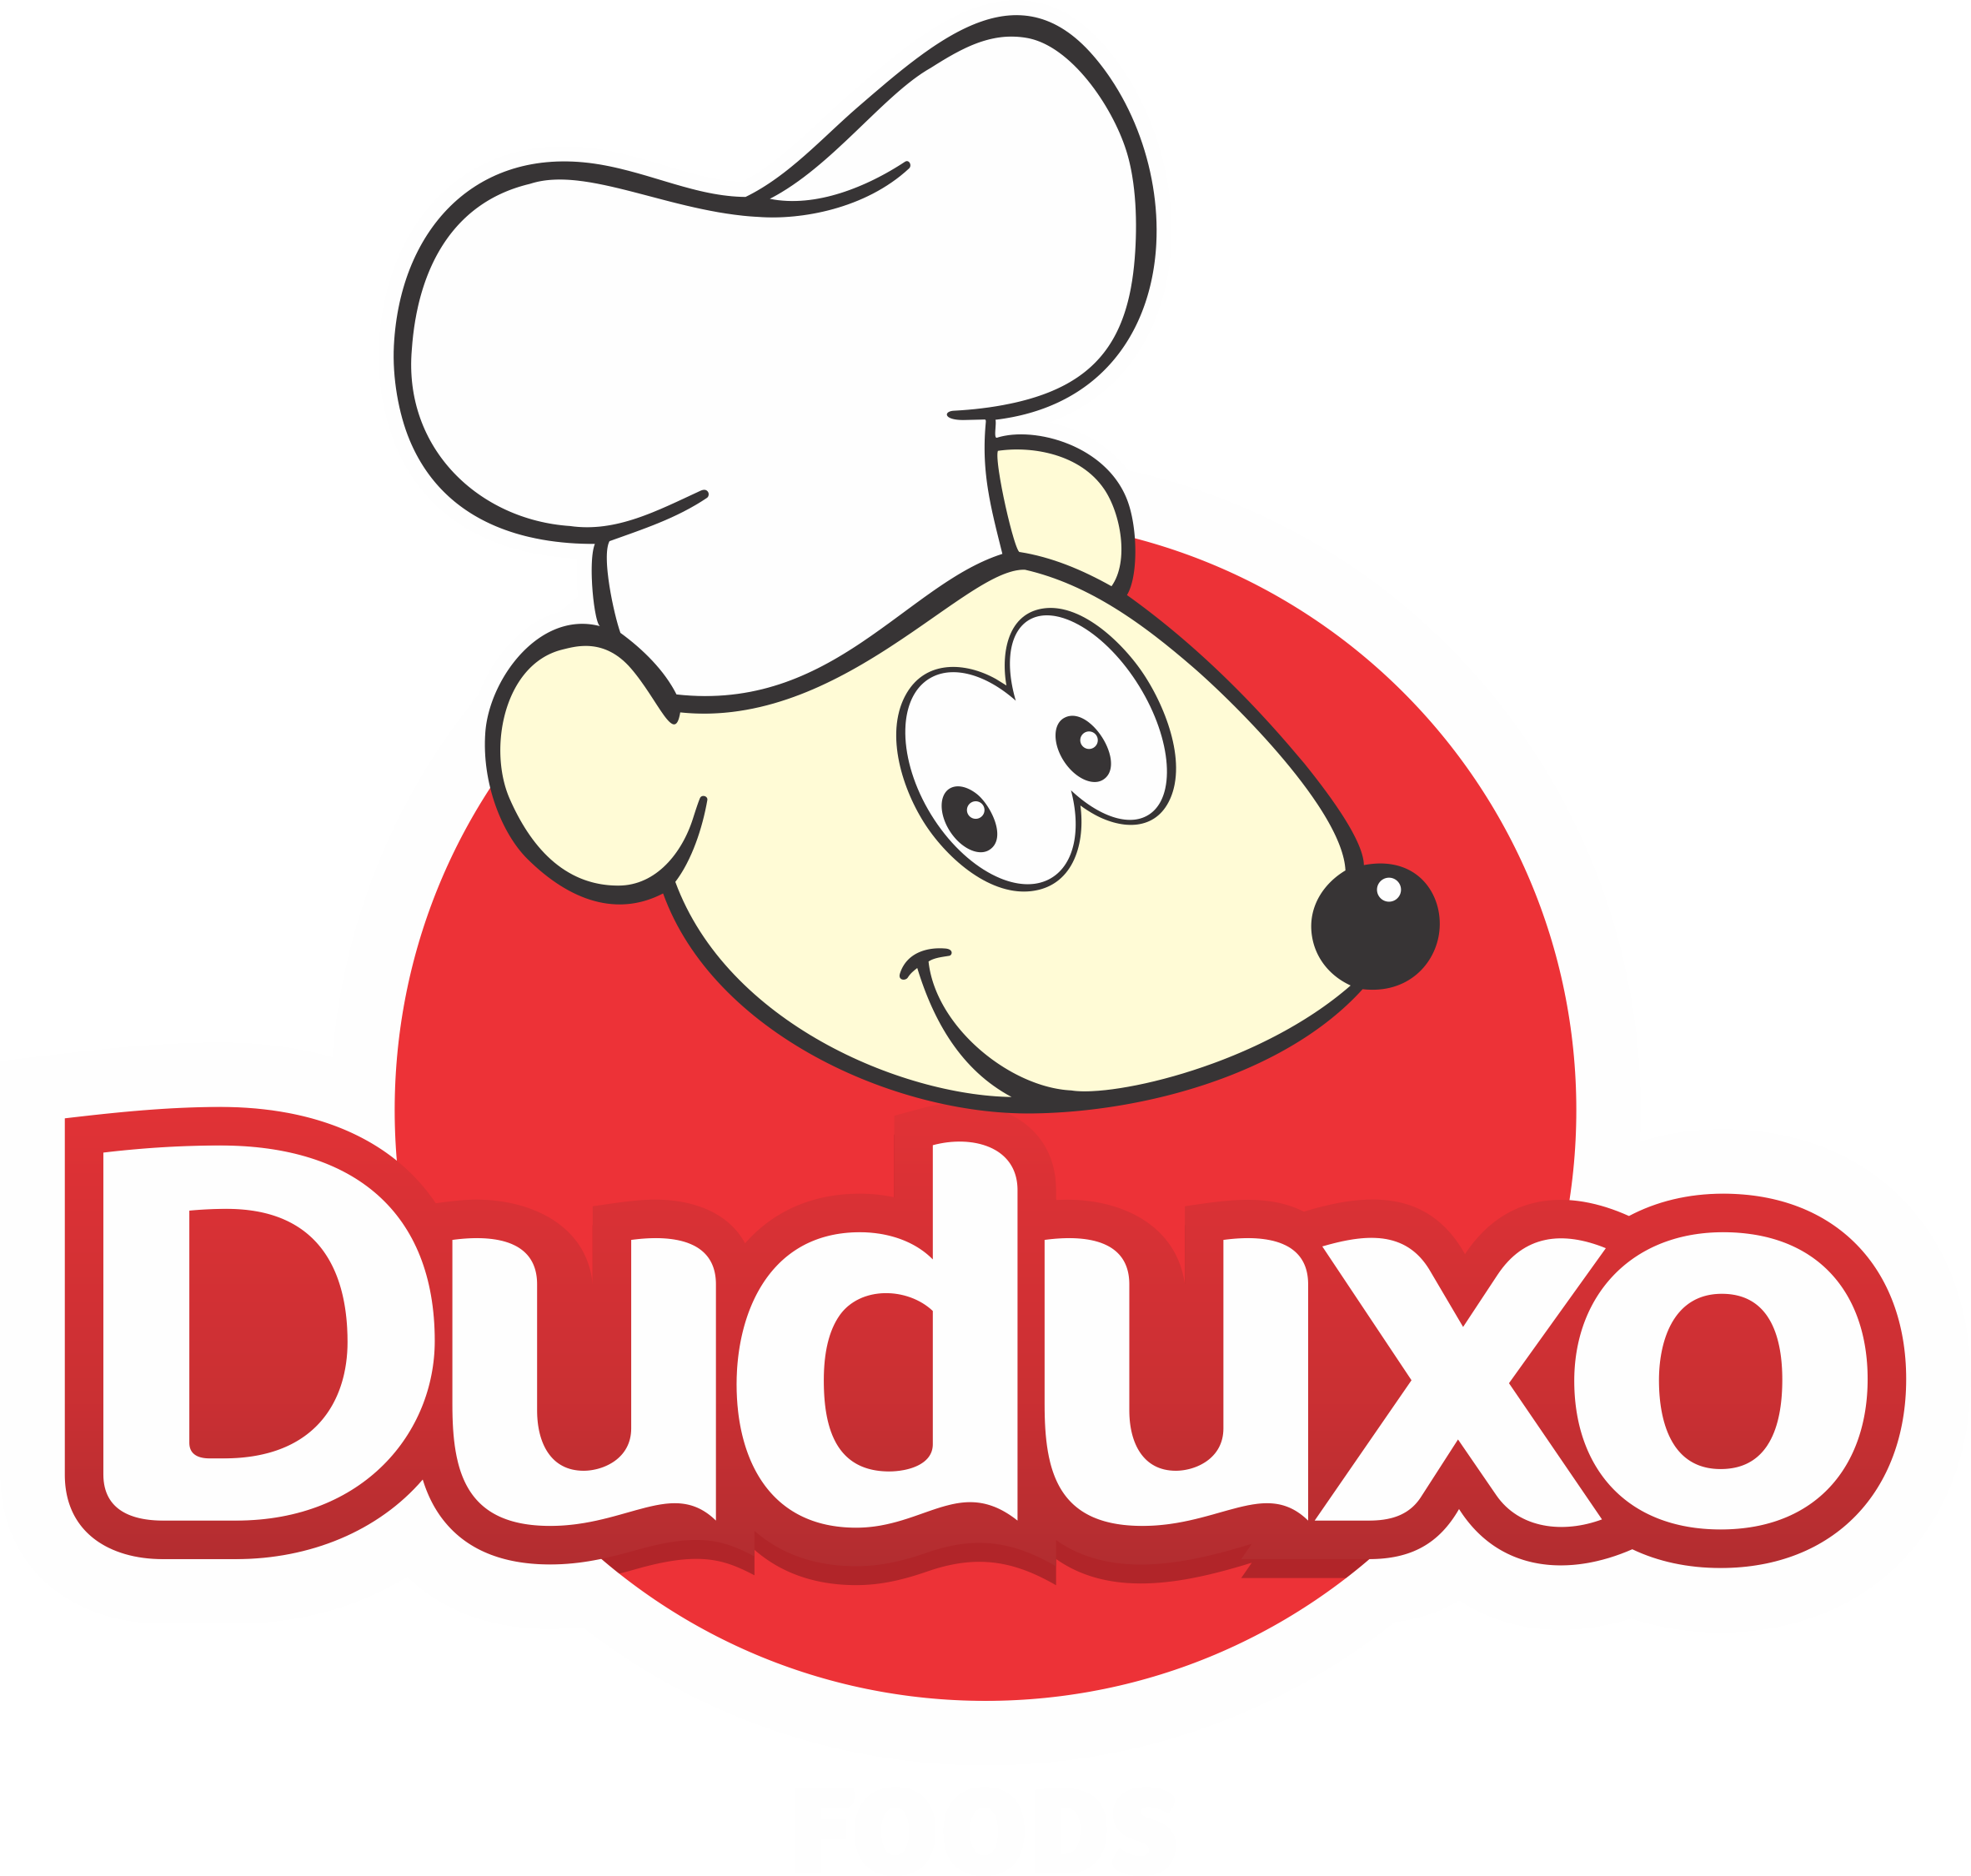 DUDUXO Foods